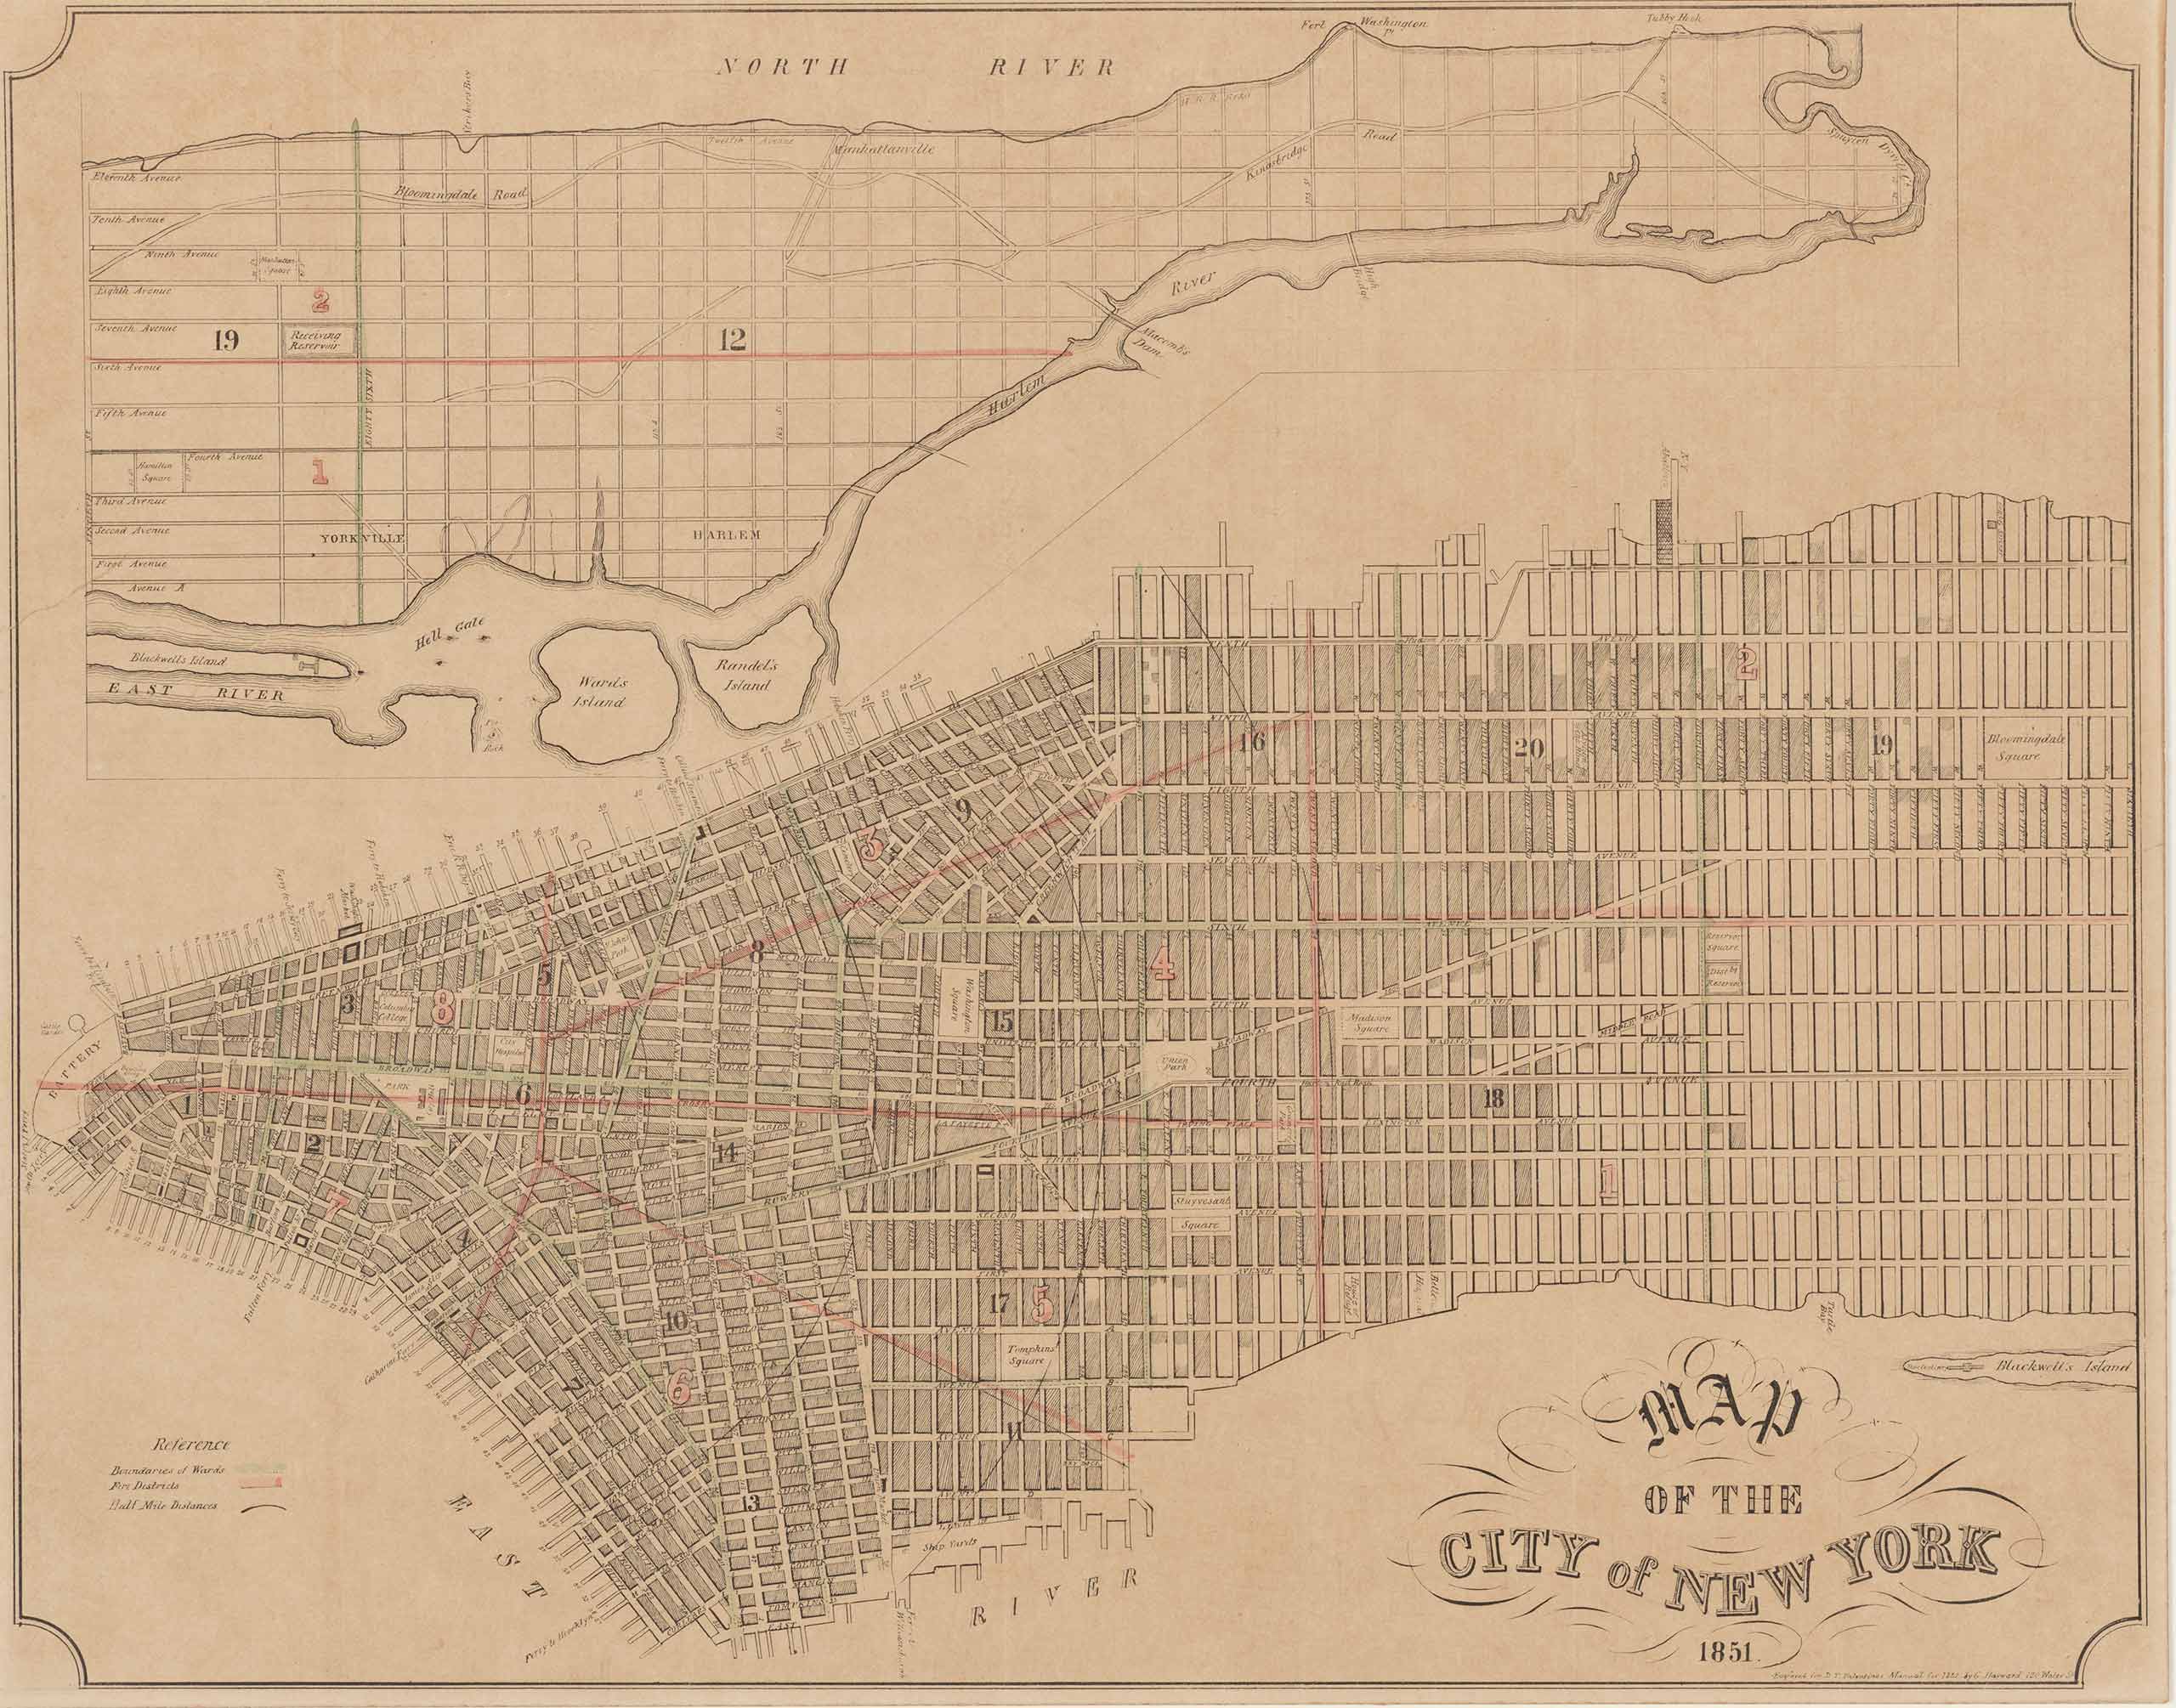 Mapa de planificación para el sistema de red de la ciudad de Nueva York. El mapa muestra todo Manhattan, con las calles y parques etiquetados.